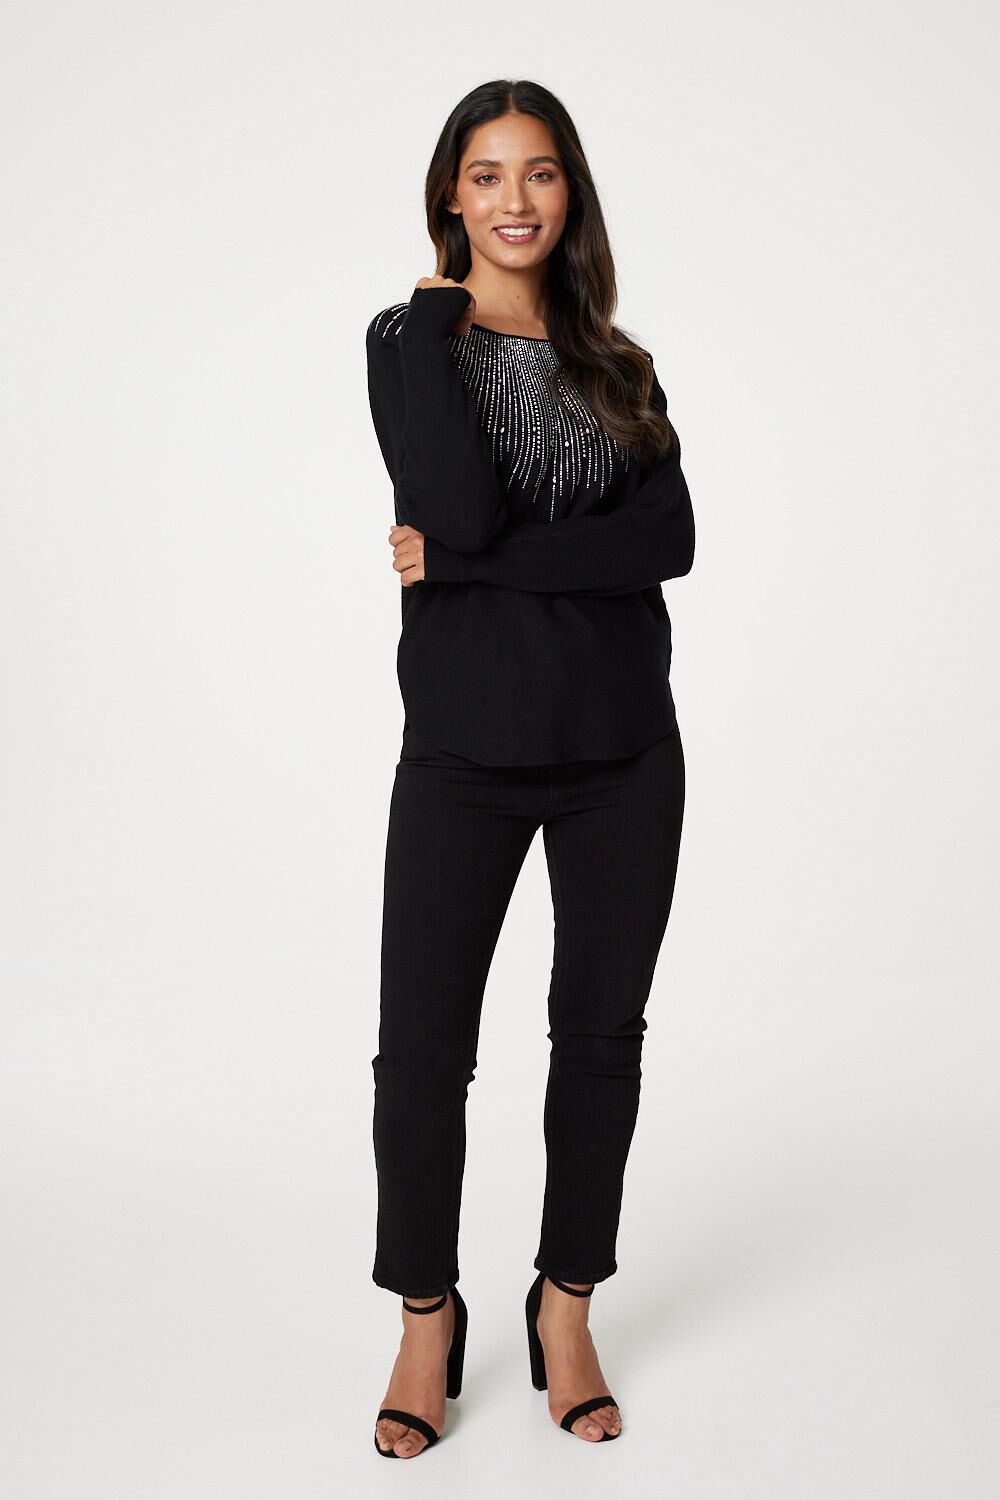 Izabel London Black - Embellished Front Knit Jumper, Size: S